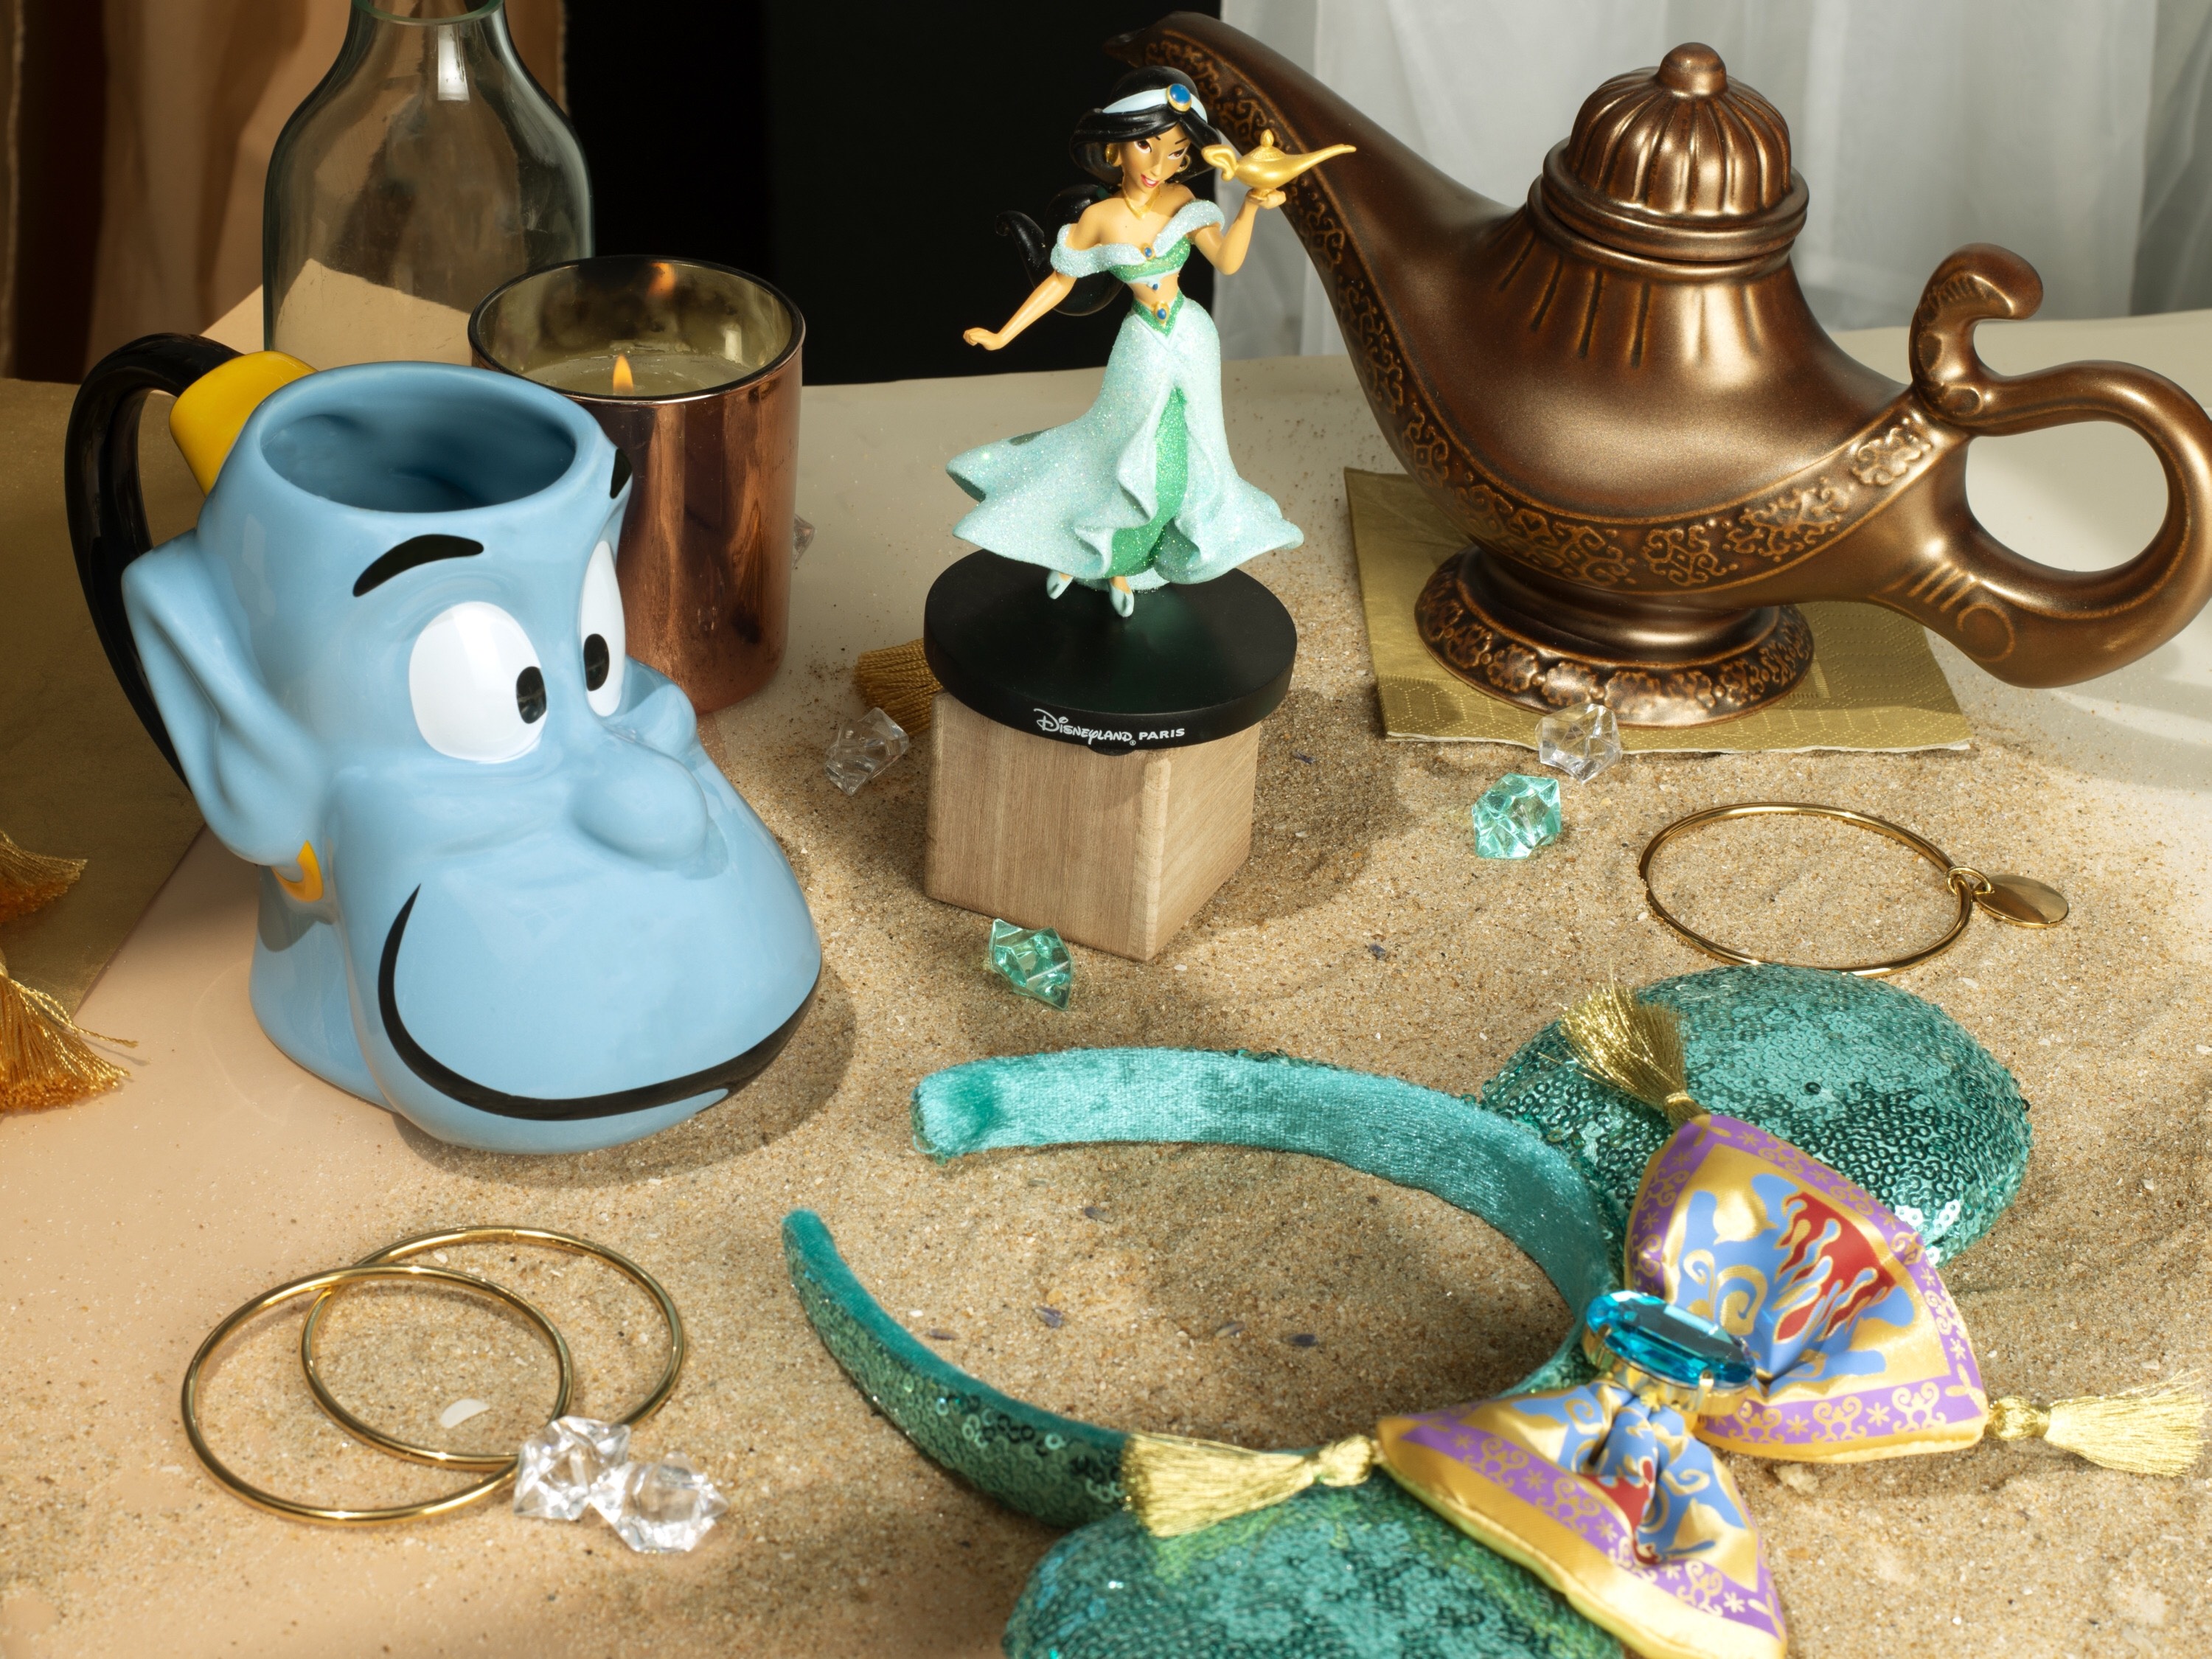 Aladdin Merchandise at Disneyland Paris